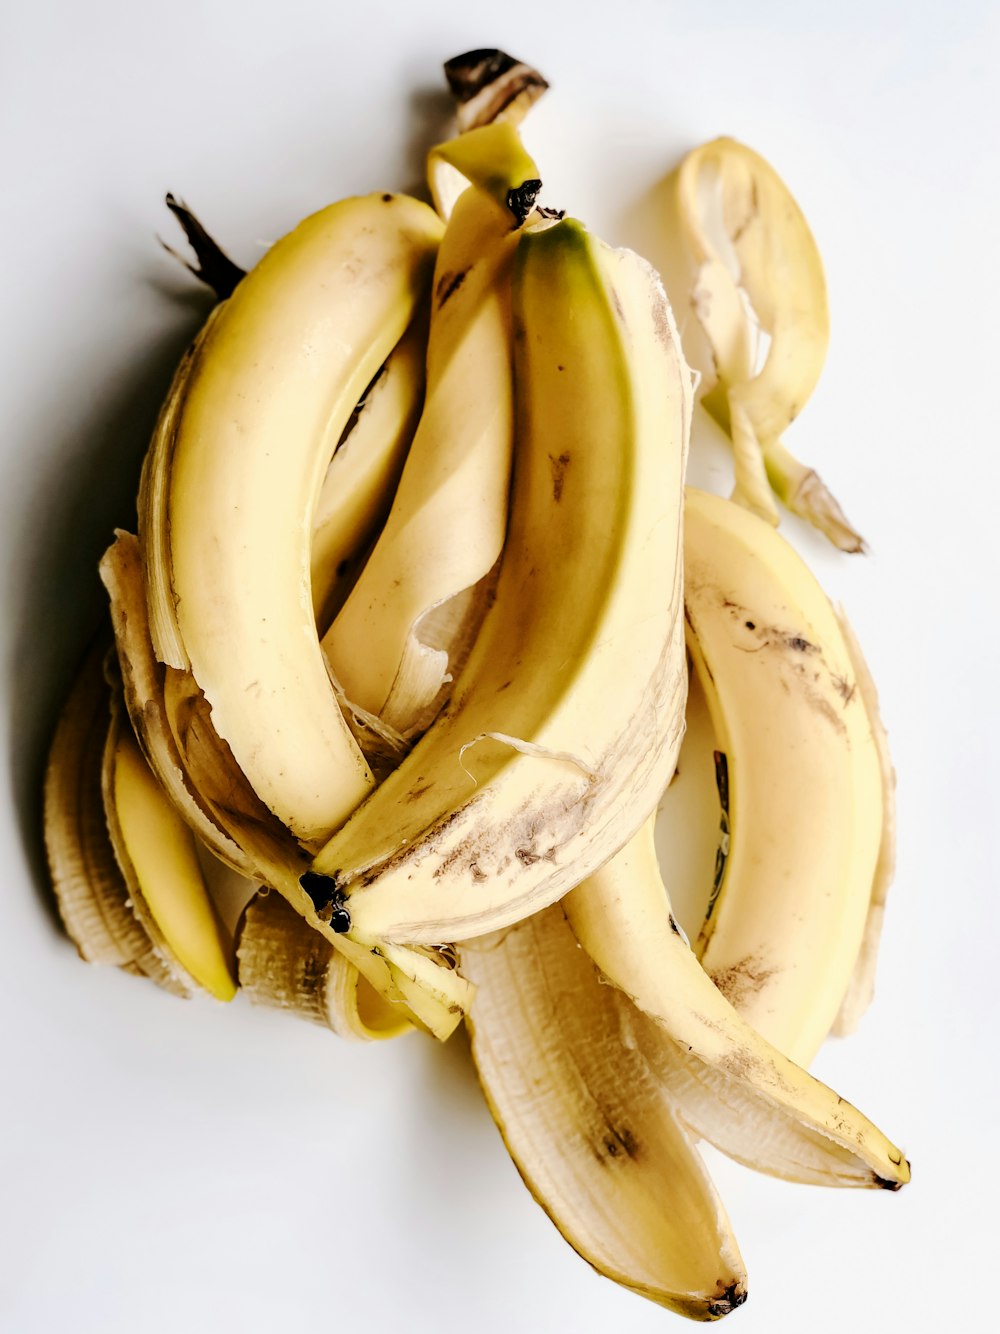 yellow banana peels